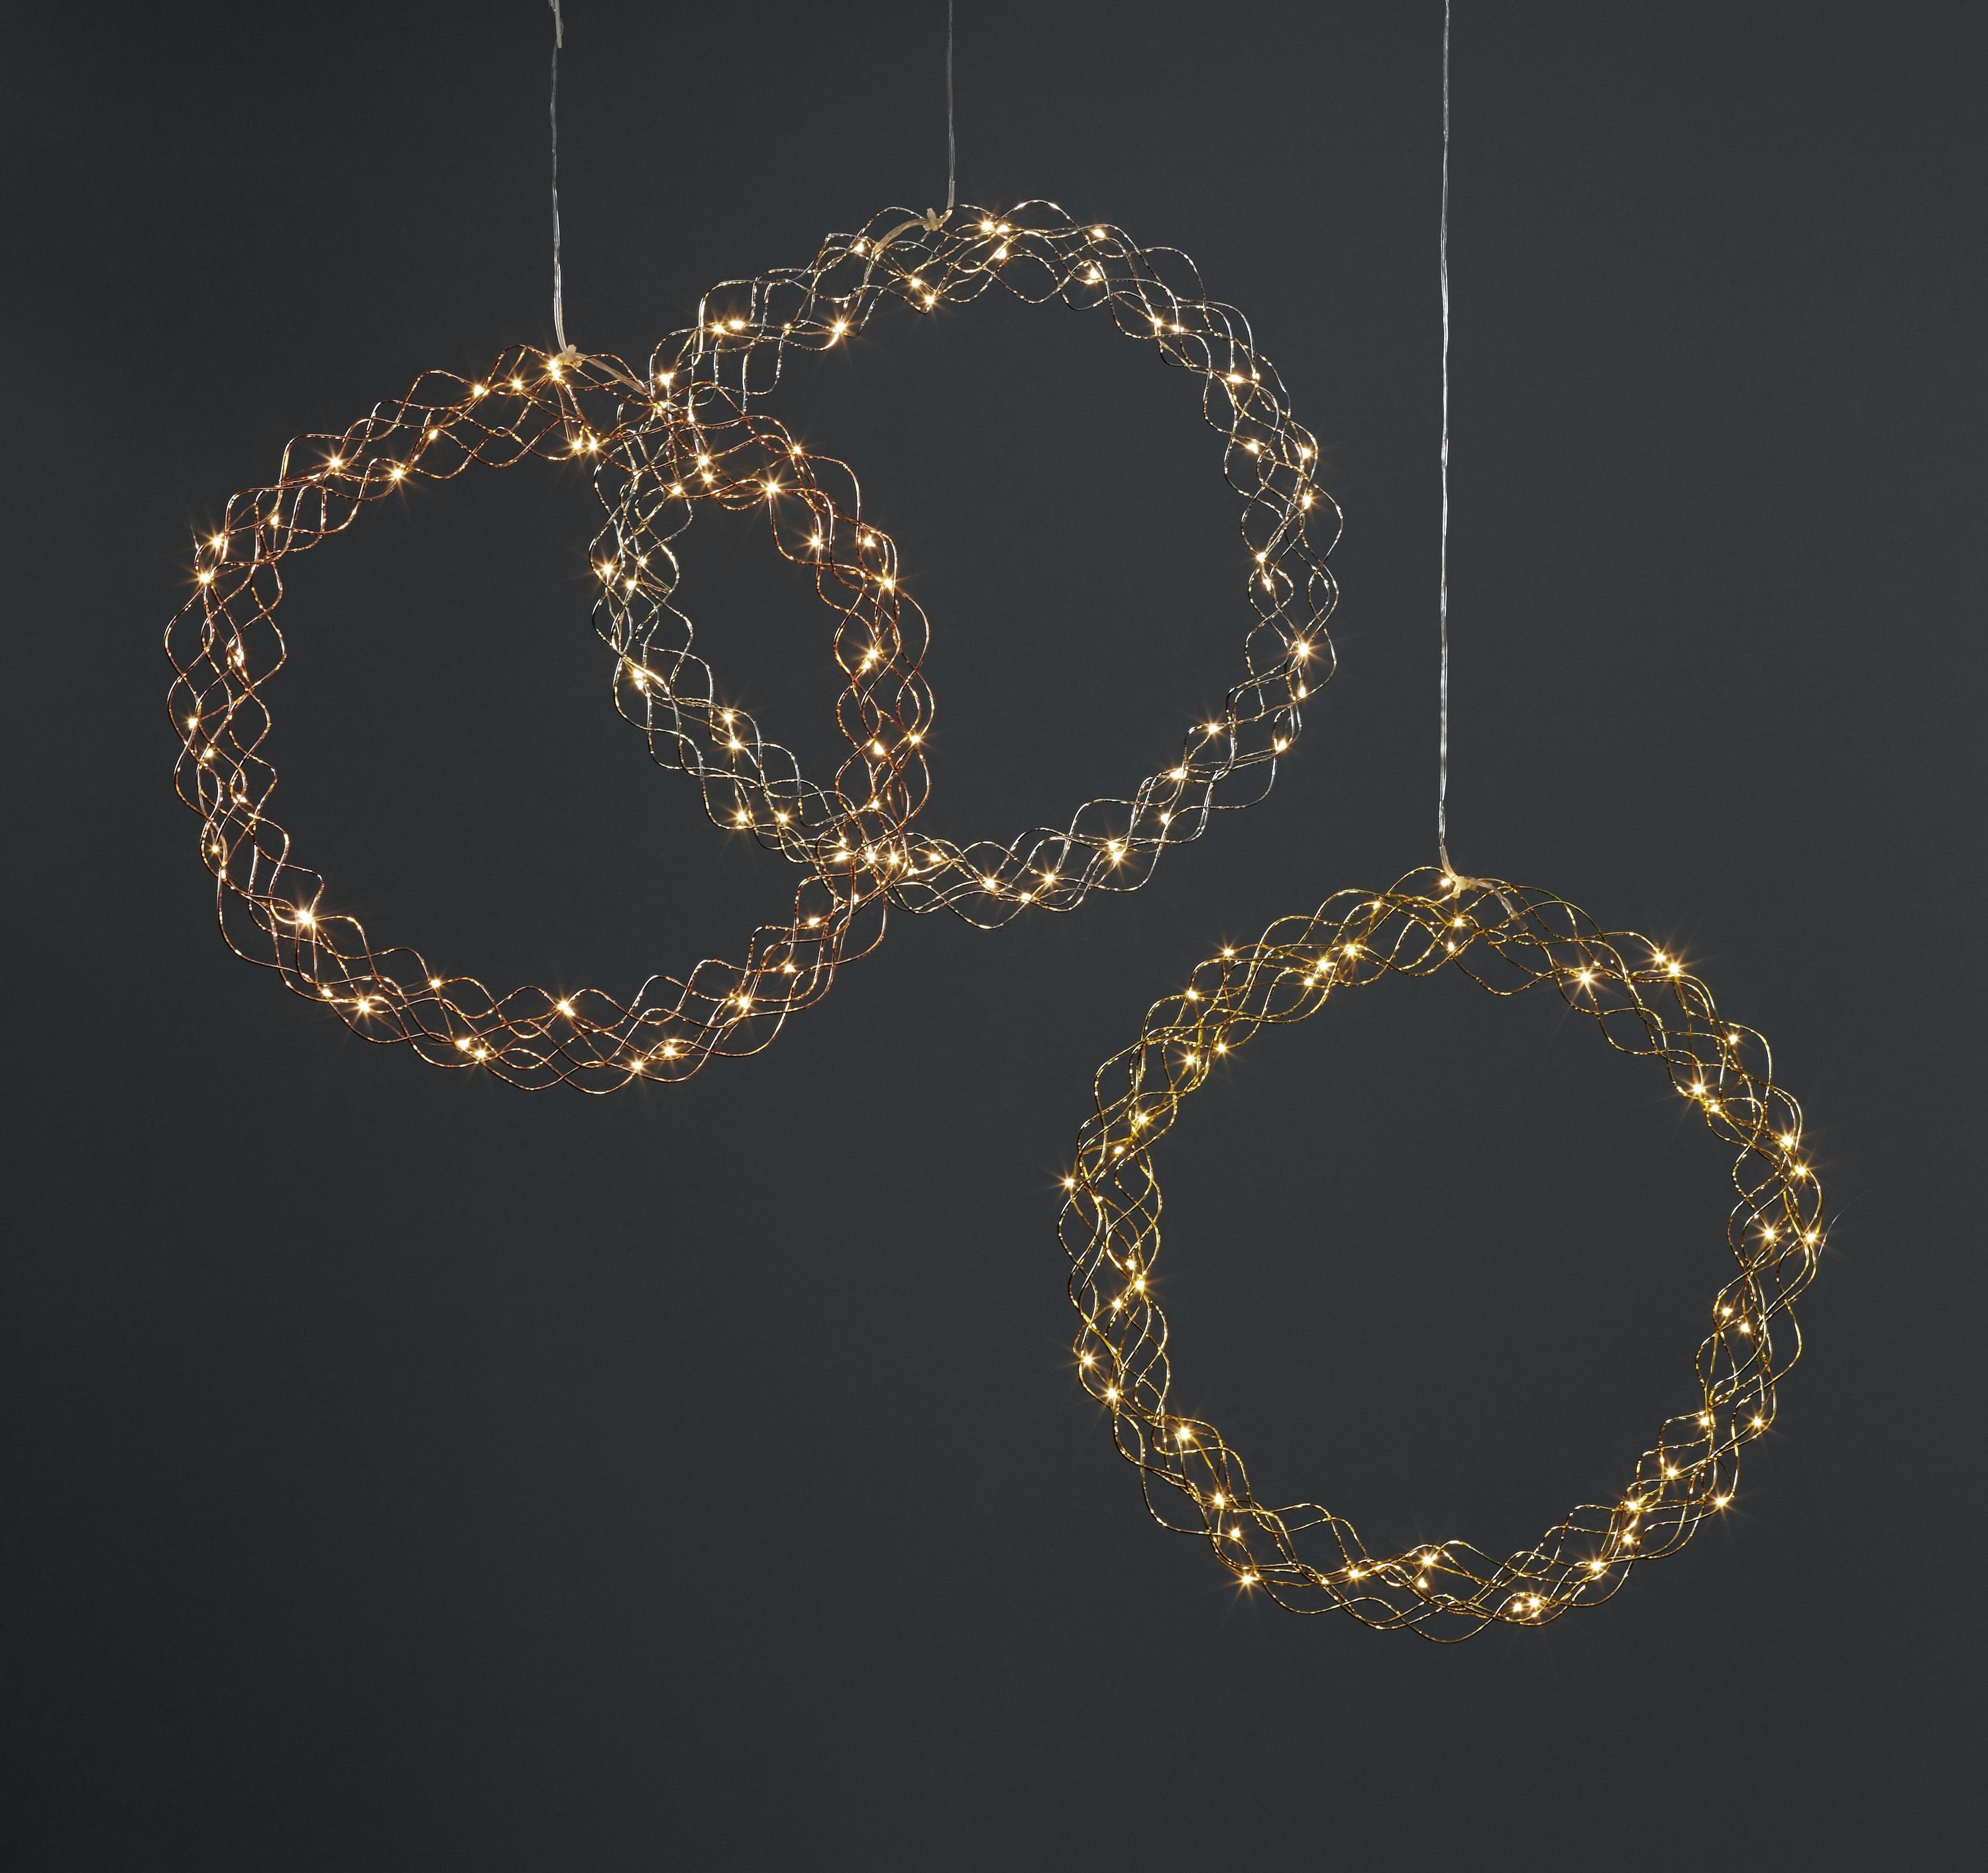 Ø: 45 cm Fensterlicht Weihnachten warmweiß aus Draht und Kunststoff in Messing LED Lichterkranz Curly von Star Trading Transparent mit Kabel 